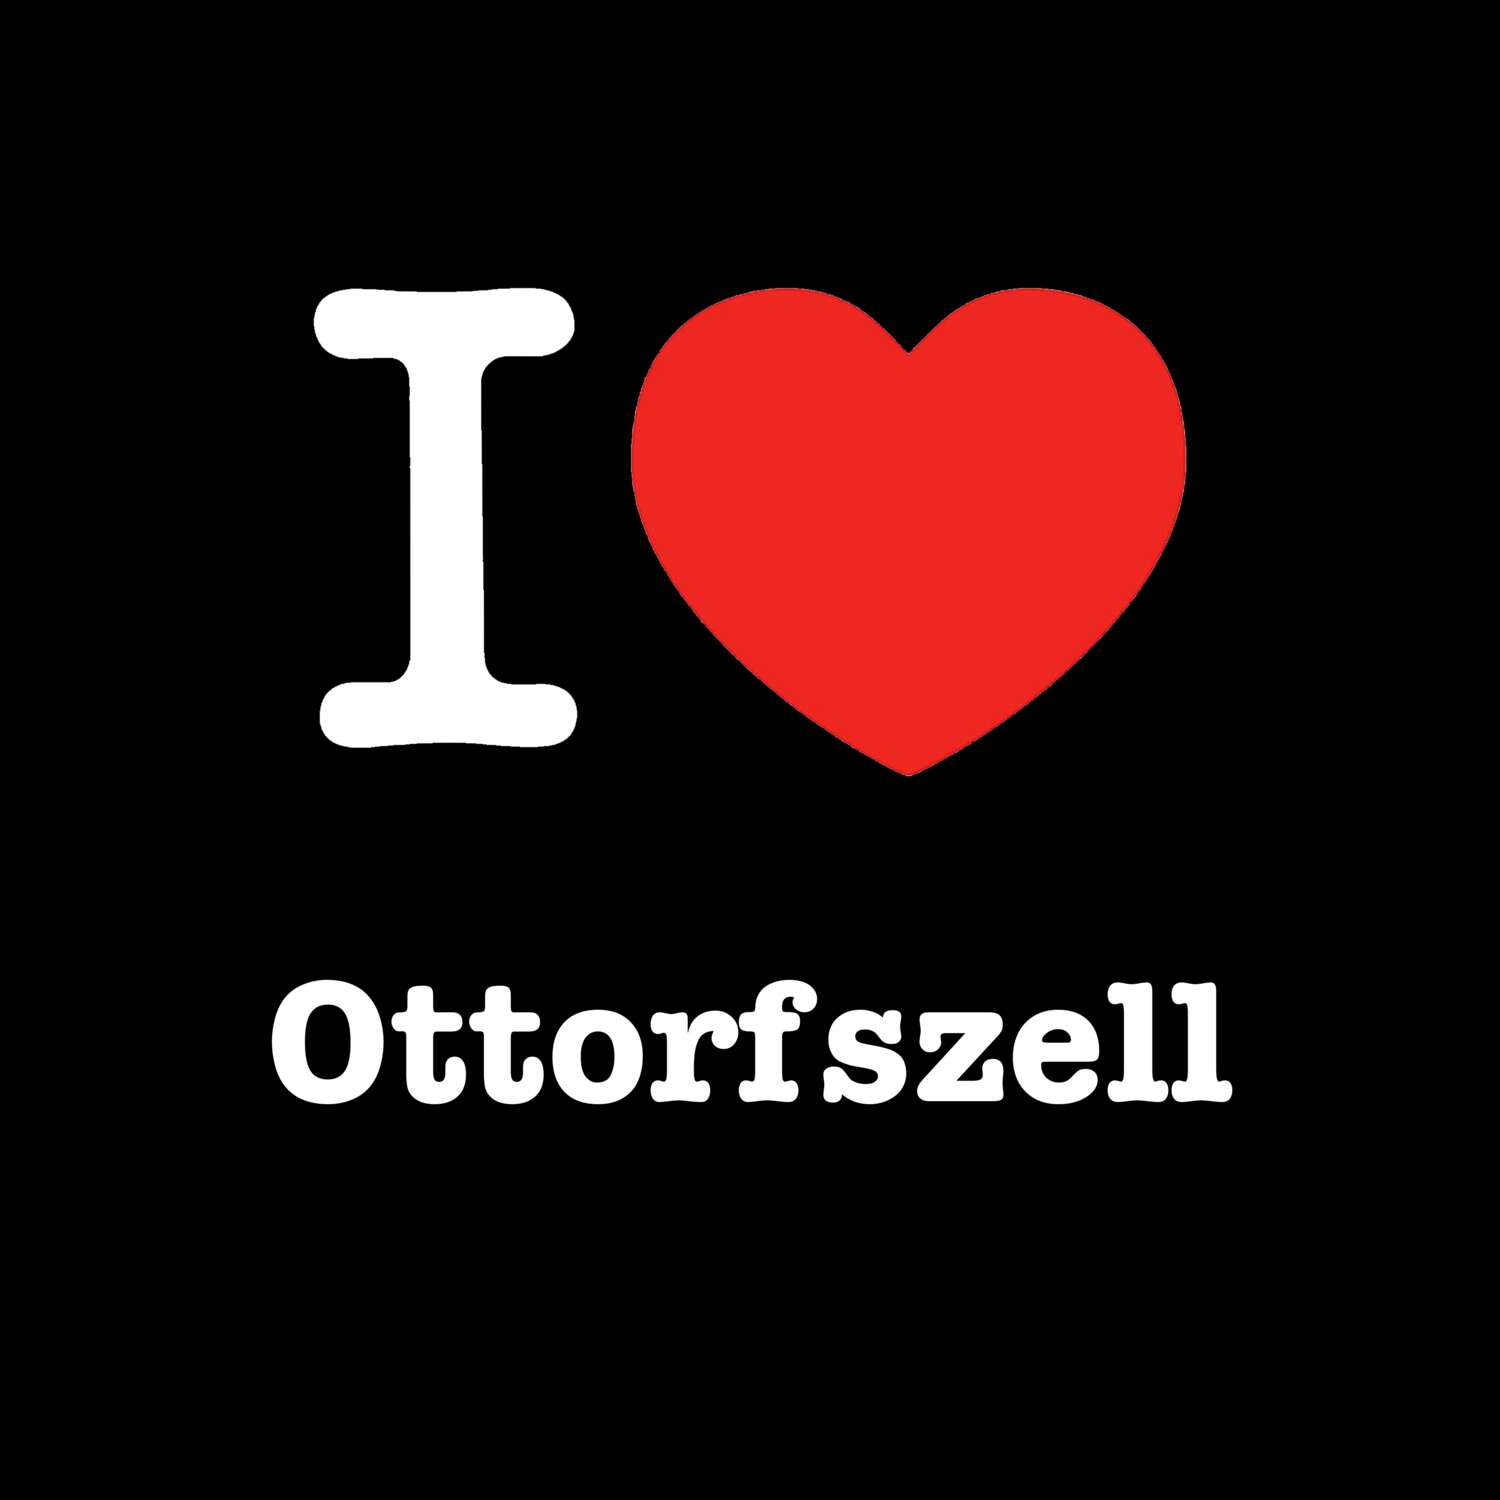 Ottorfszell T-Shirt »I love«